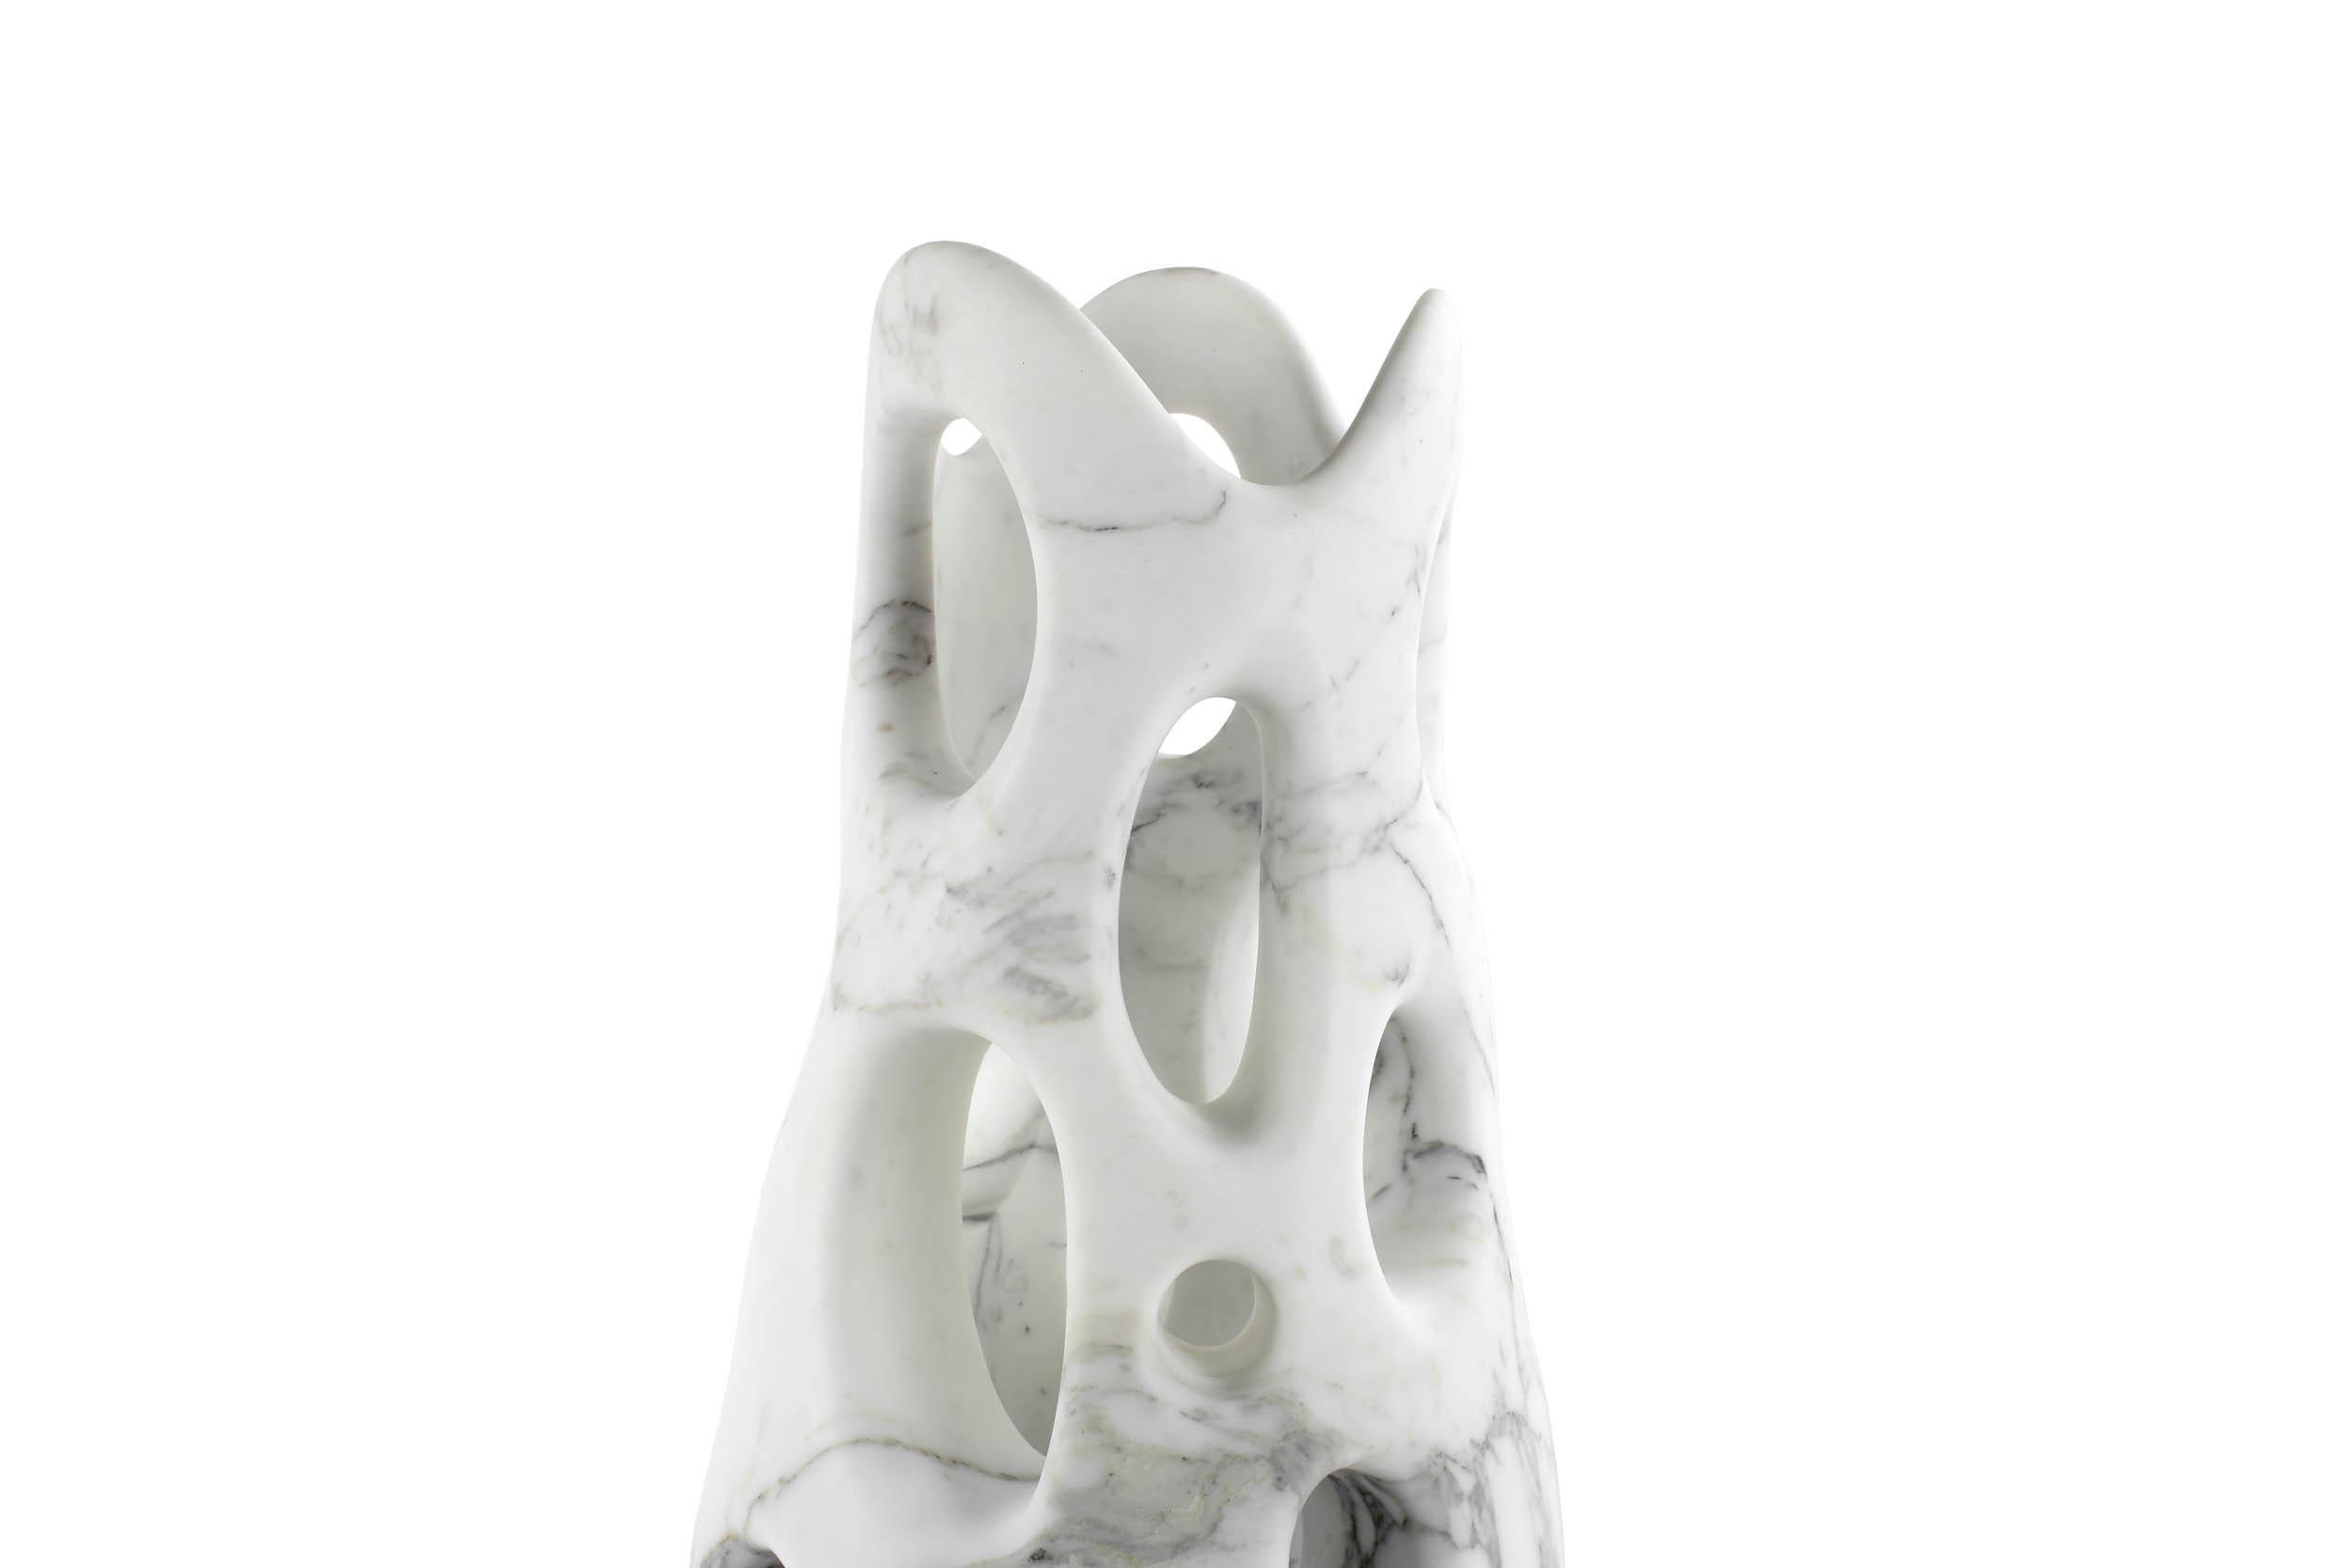 Important vase sculptural taillé à la main dans un bloc massif de marbre Arabescato. 

Dimensions du vase : D 30 x H 67 cm. Disponible en différentes marbrures. 

Édition limitée à 35 exemplaires.

Chaque vase est signé et numéroté à la main par les